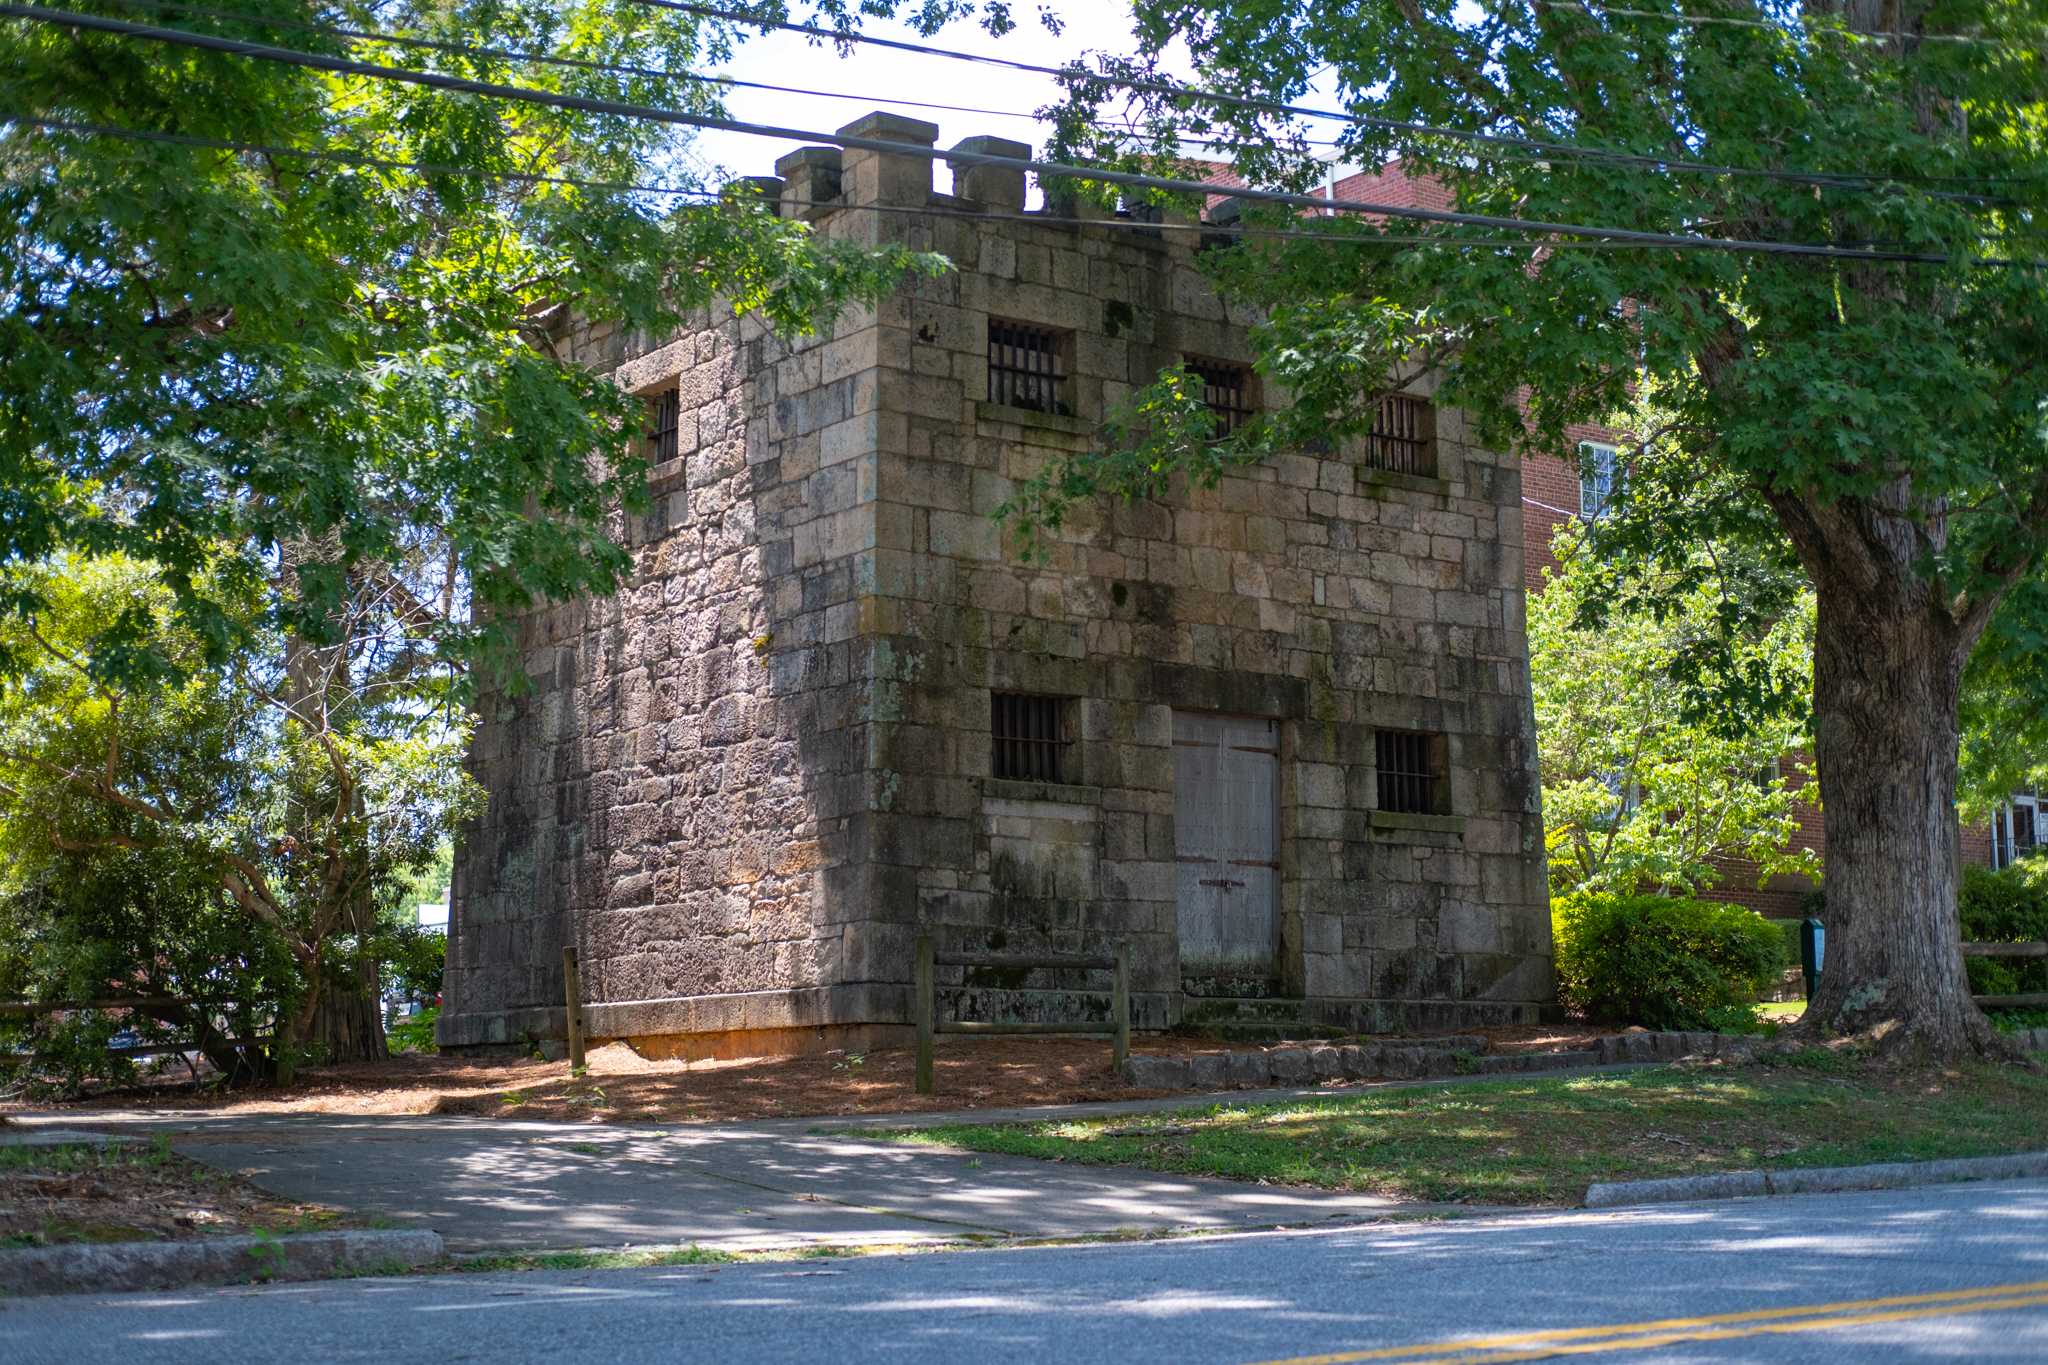 The Old Gaol in Greensboro, GA